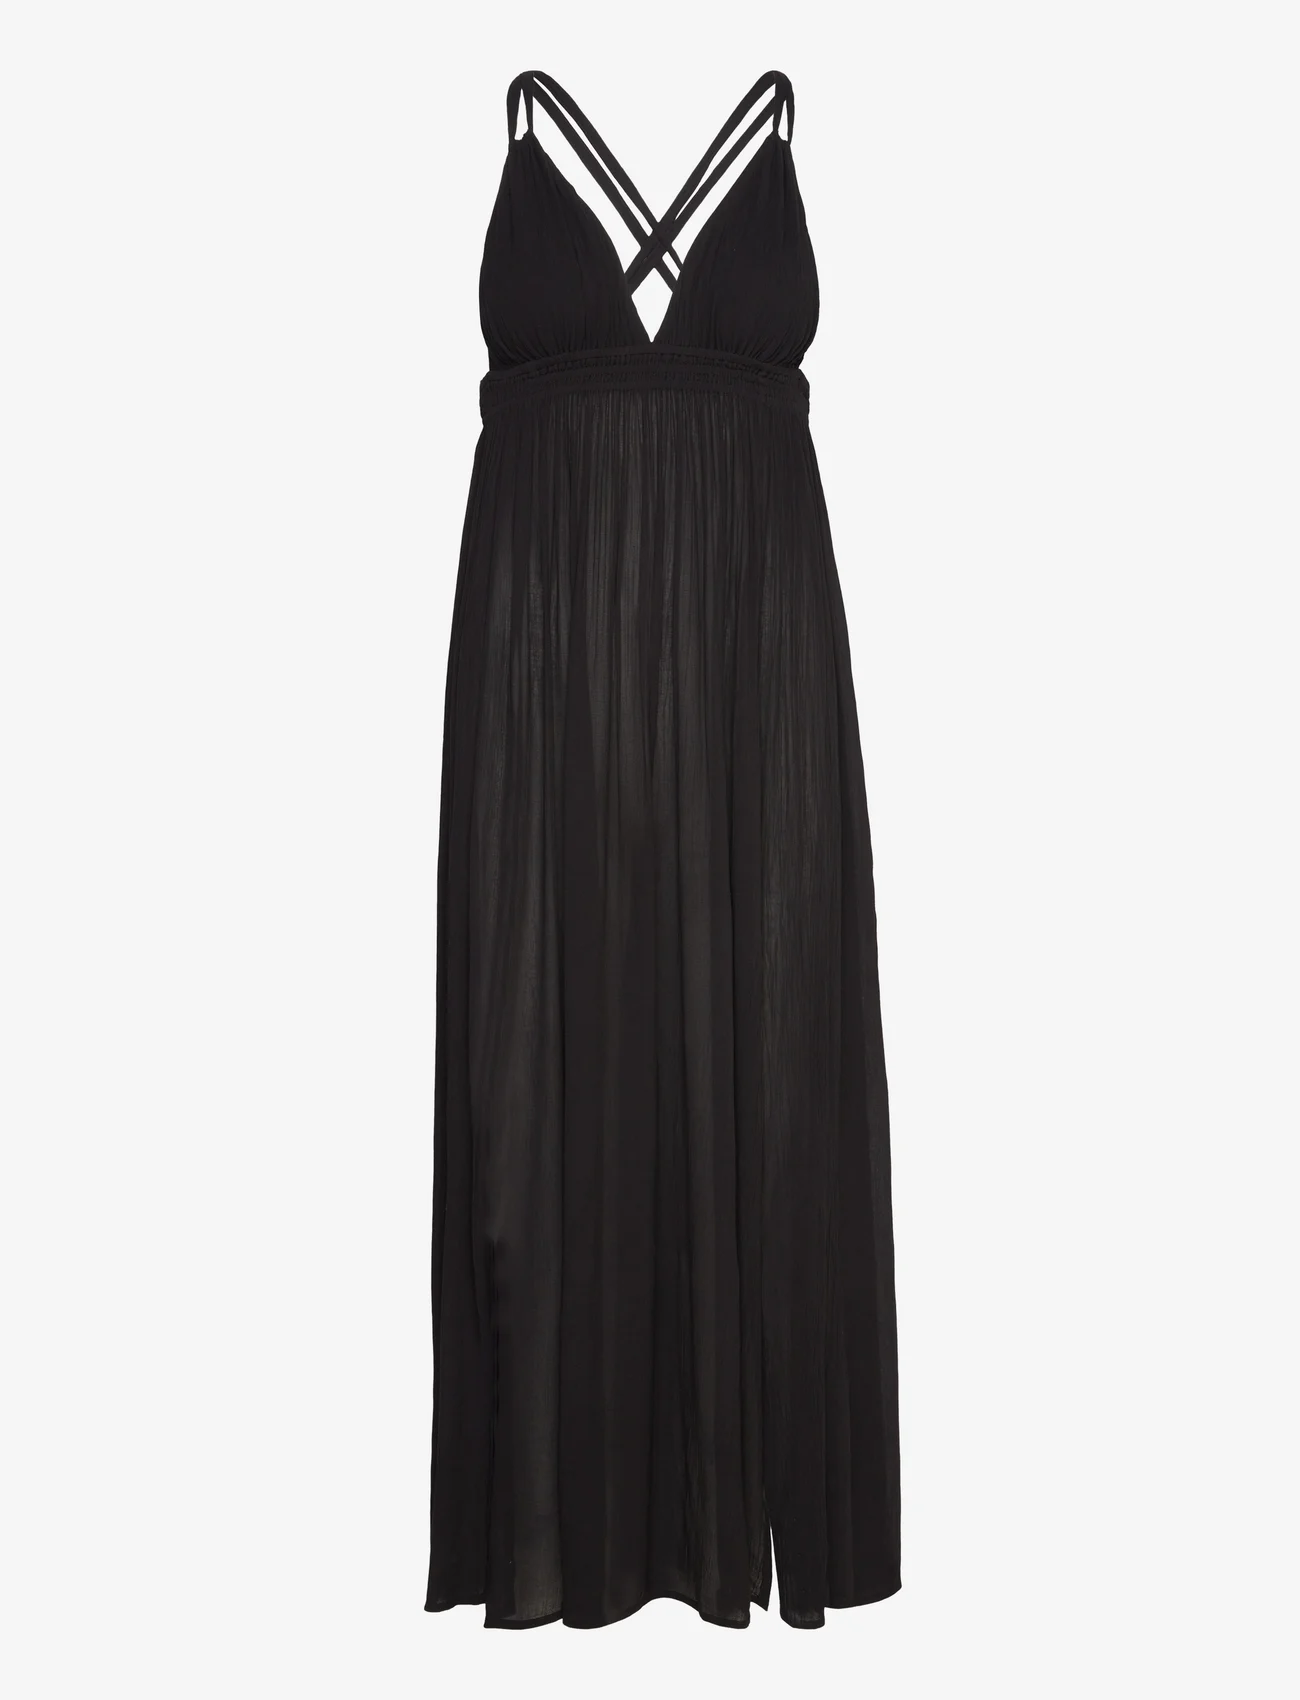 AllSaints - ROSA DRESS - kesämekot - black - 0